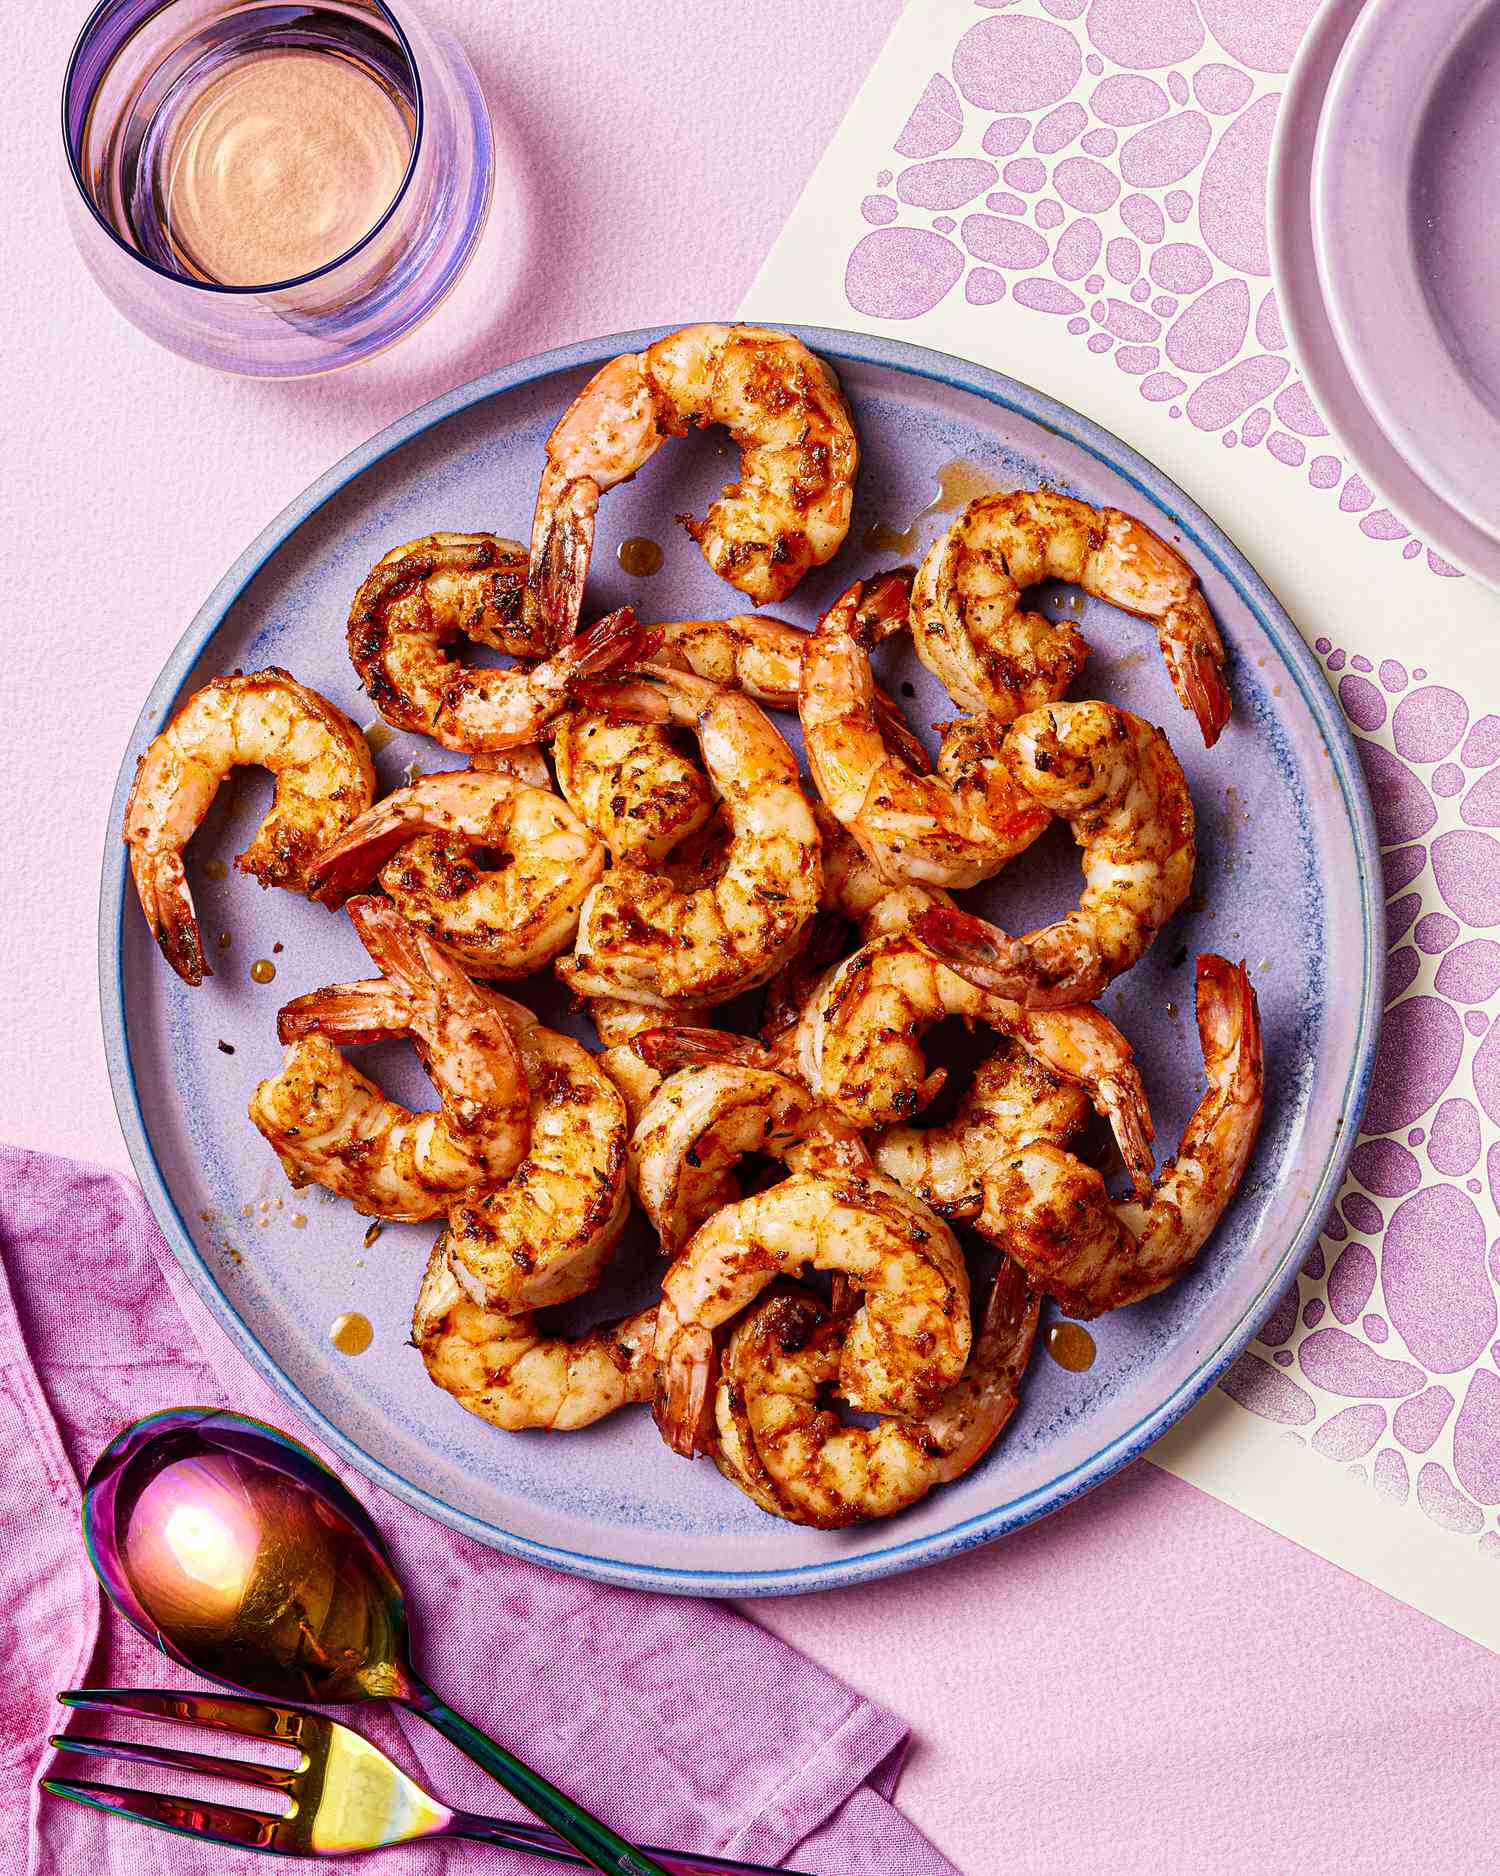 Cajun shrimp on a purple plate.